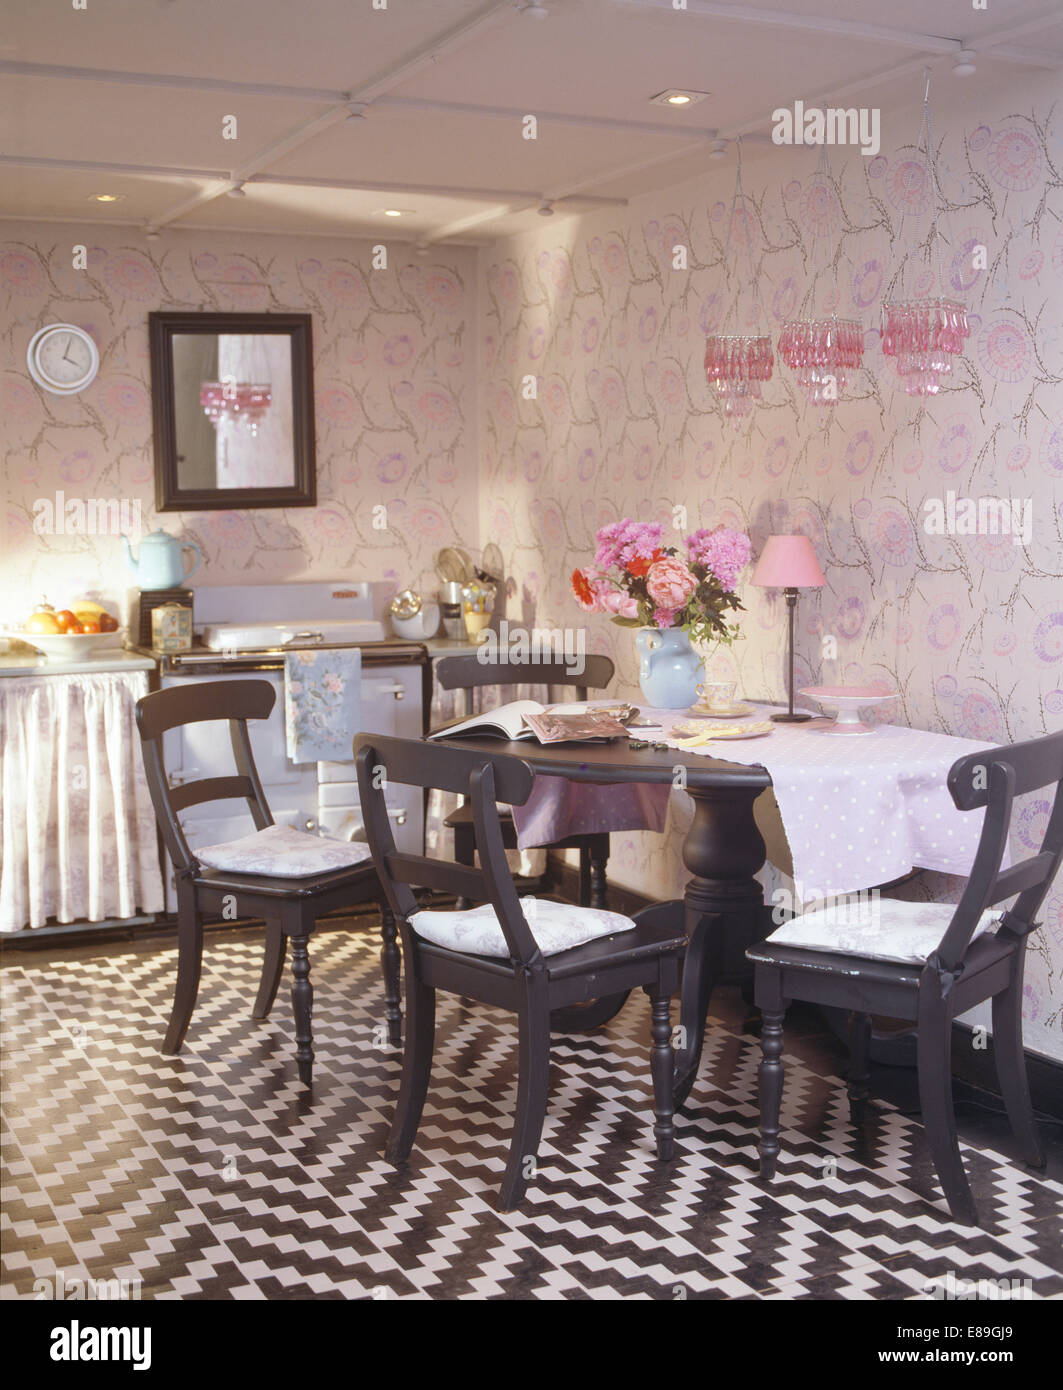 Noir +blanc au pochoir en zig-zag en étage cuisine salle à manger avec table et chaises peintes en noir et les murs au pochoir Banque D'Images